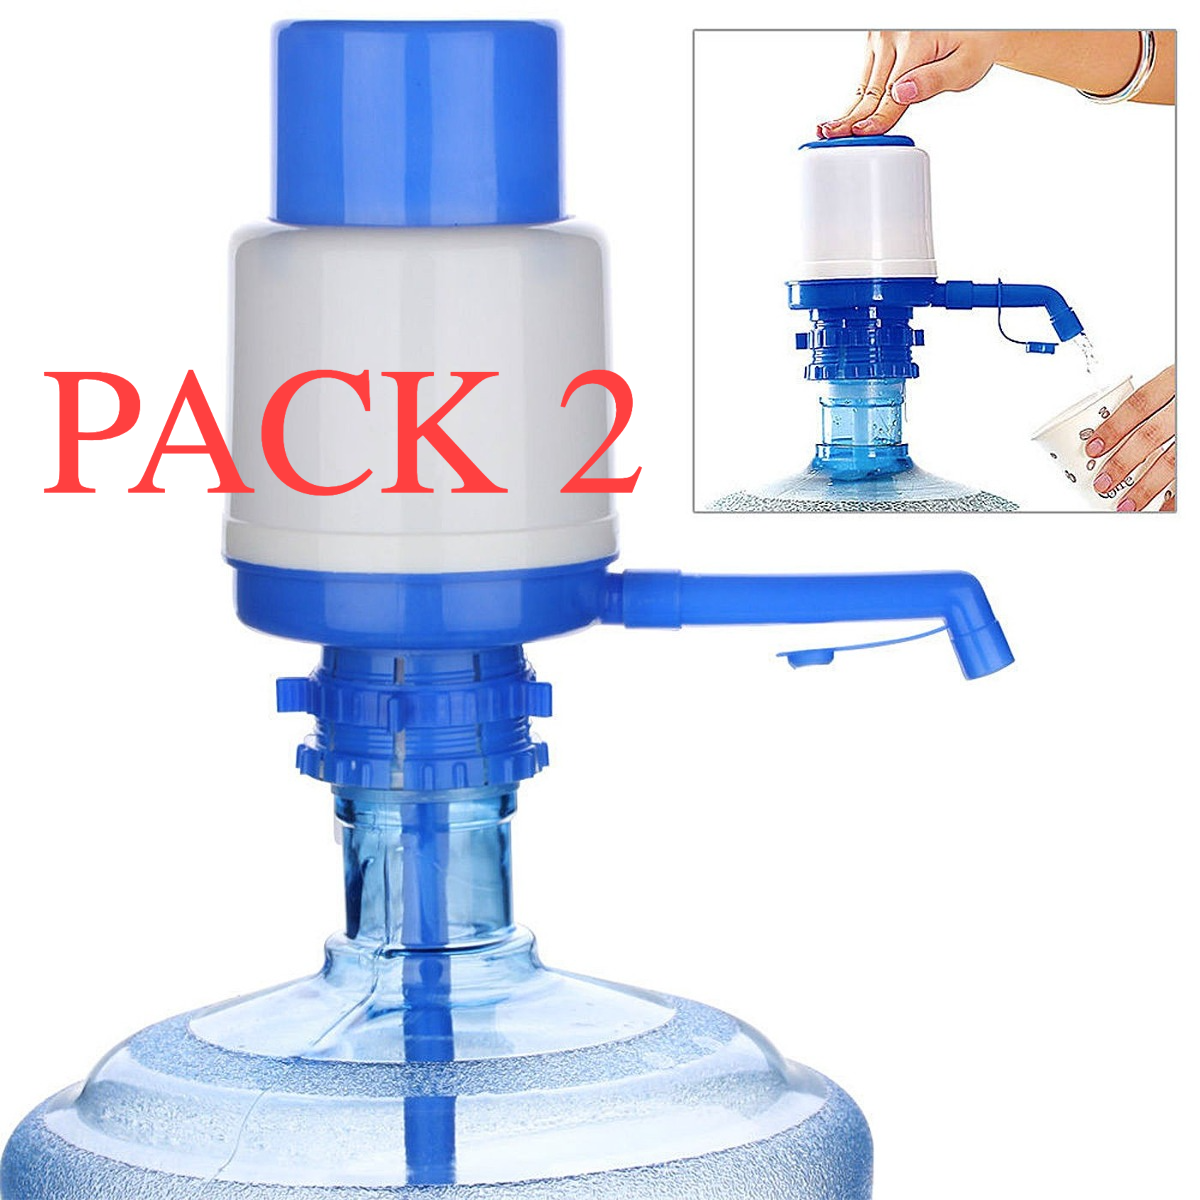 Pack 2 Dispensadores Agua Para Botellon 10 a 20 Litros Bomba Para Botellon